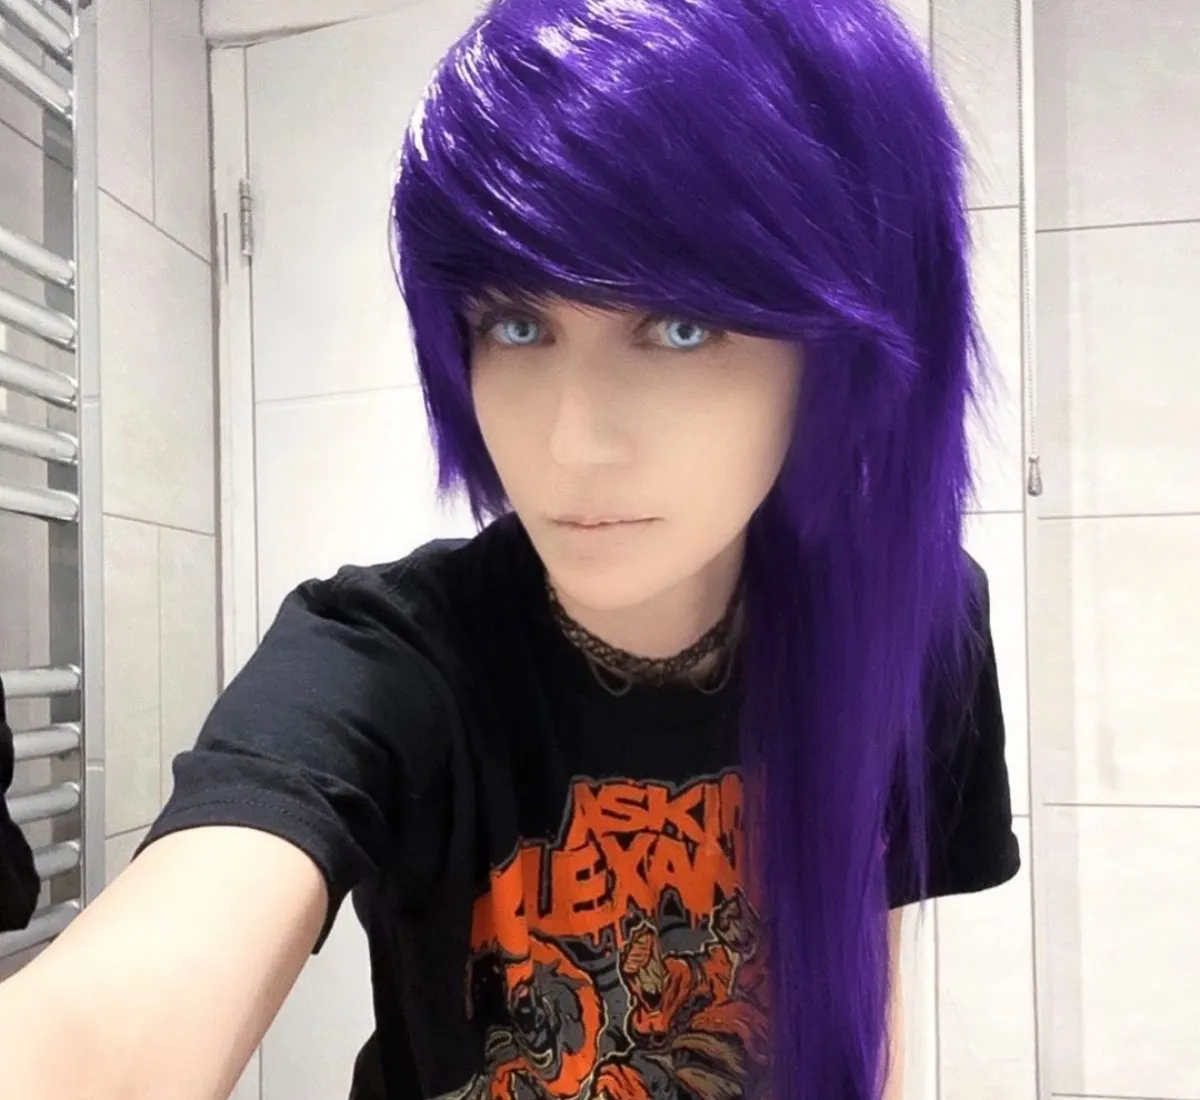 scene girl purple hair bathroom